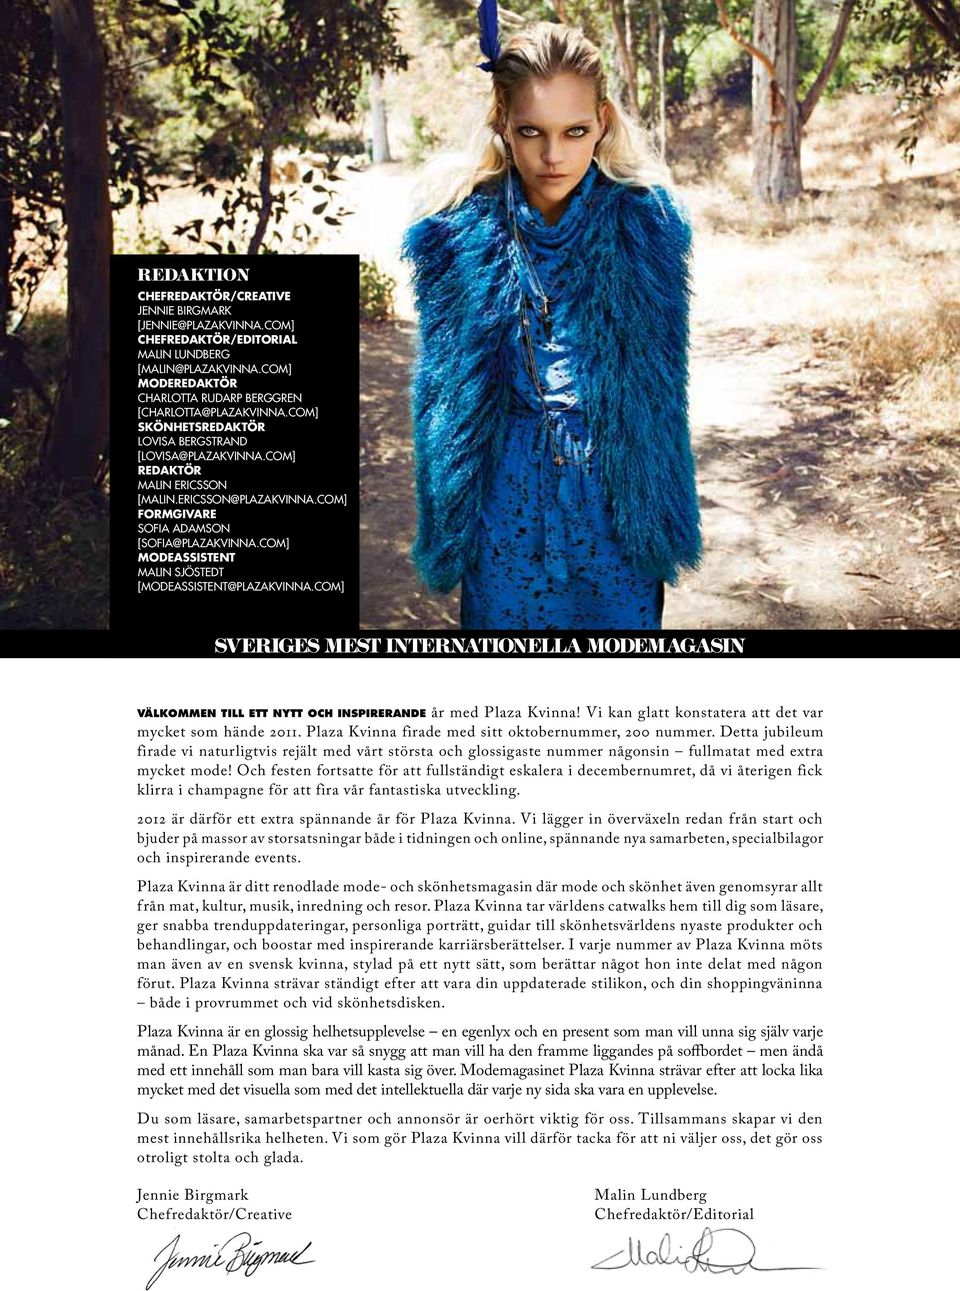 com] modeassistent malin Sjöstedt [modeassistent@plazakvinna.com] Sveriges mest internationella modemagasin VÄLKOMMEN TILL ETT NYTT OCH INSPIRERANDE år med Plaza Kvinna!